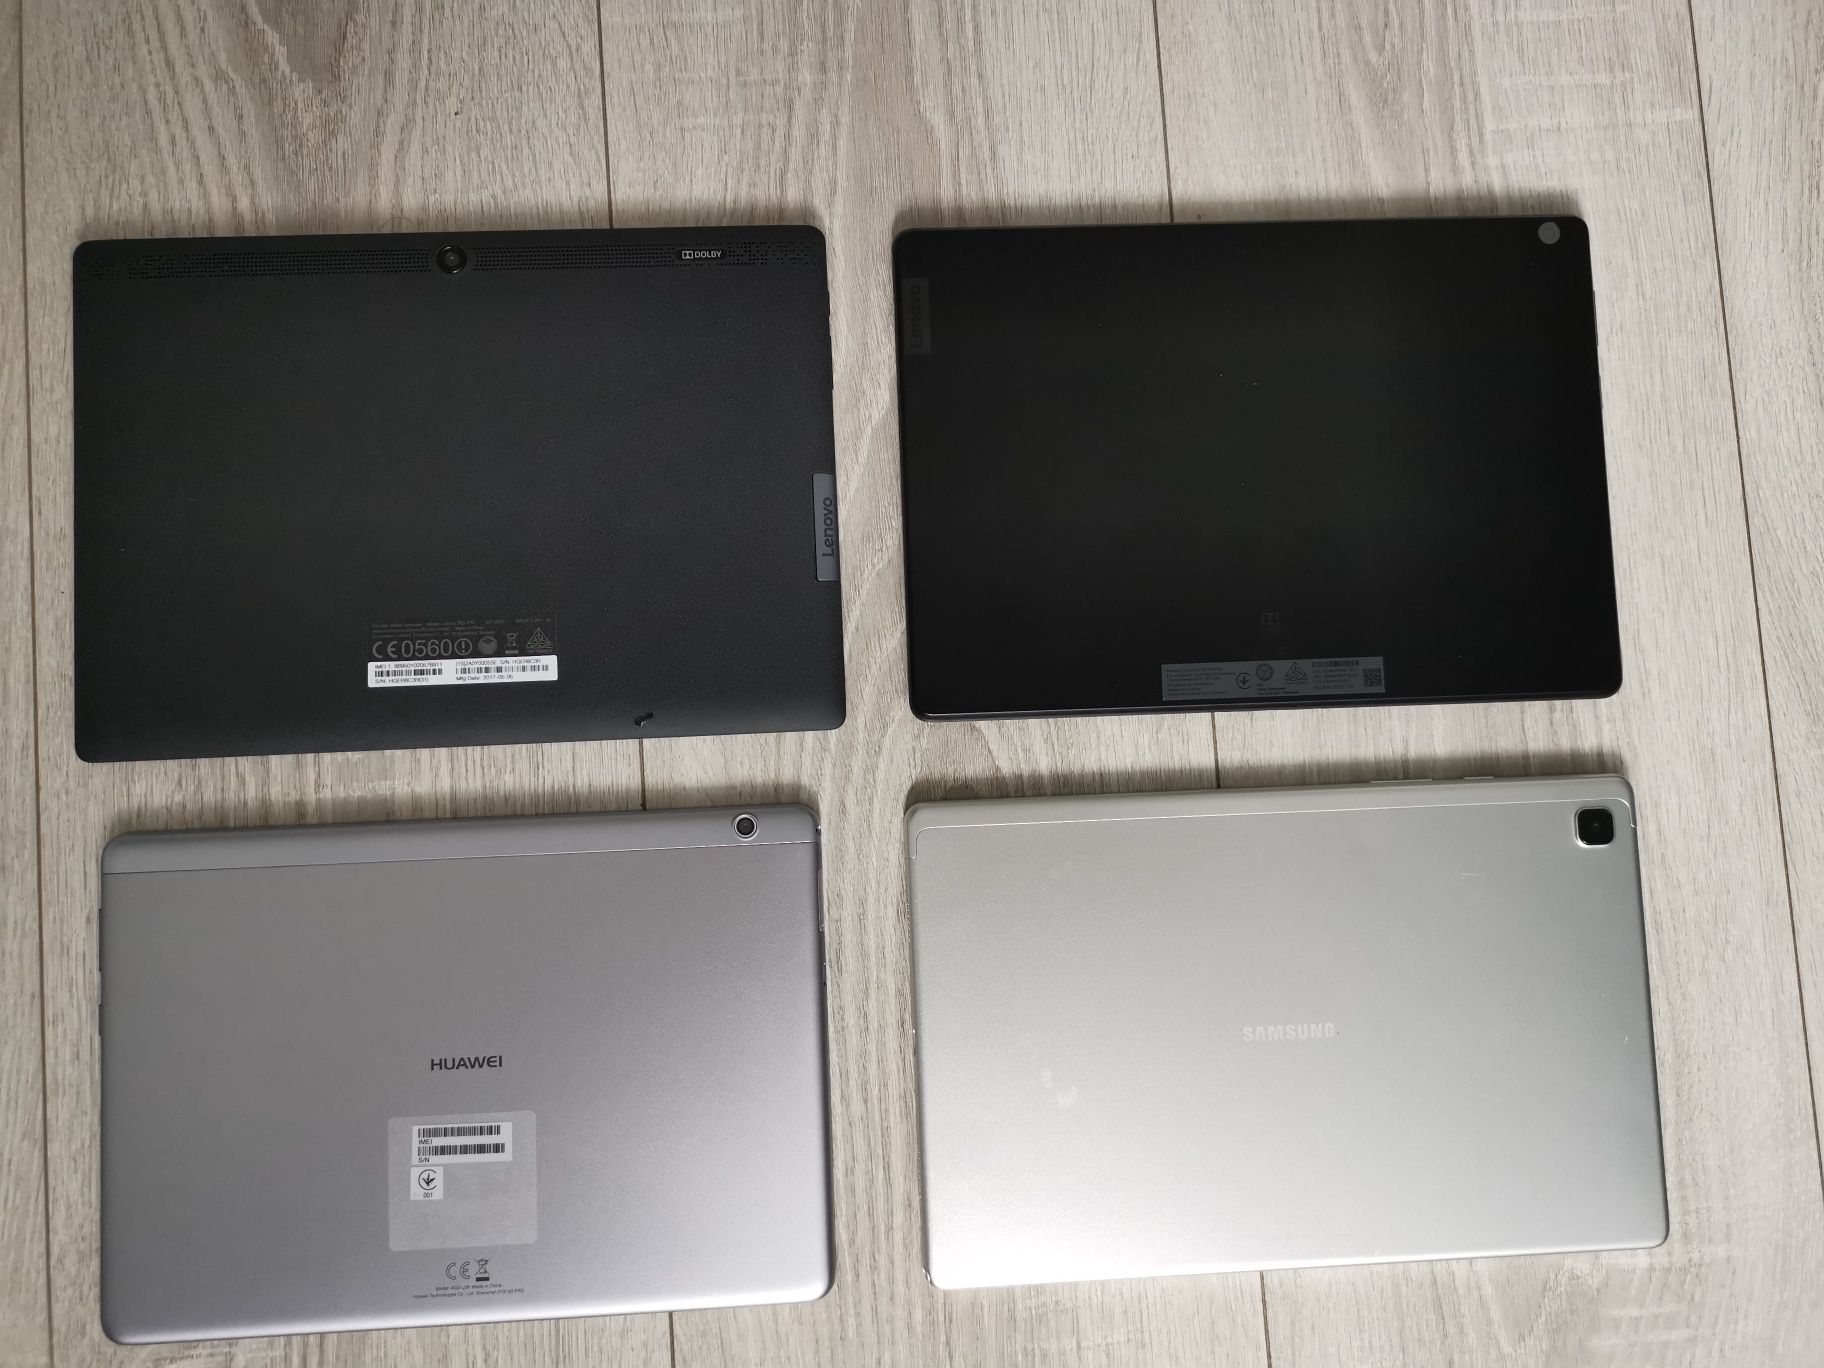 Tablete Samsung, Huawei, Lenovo